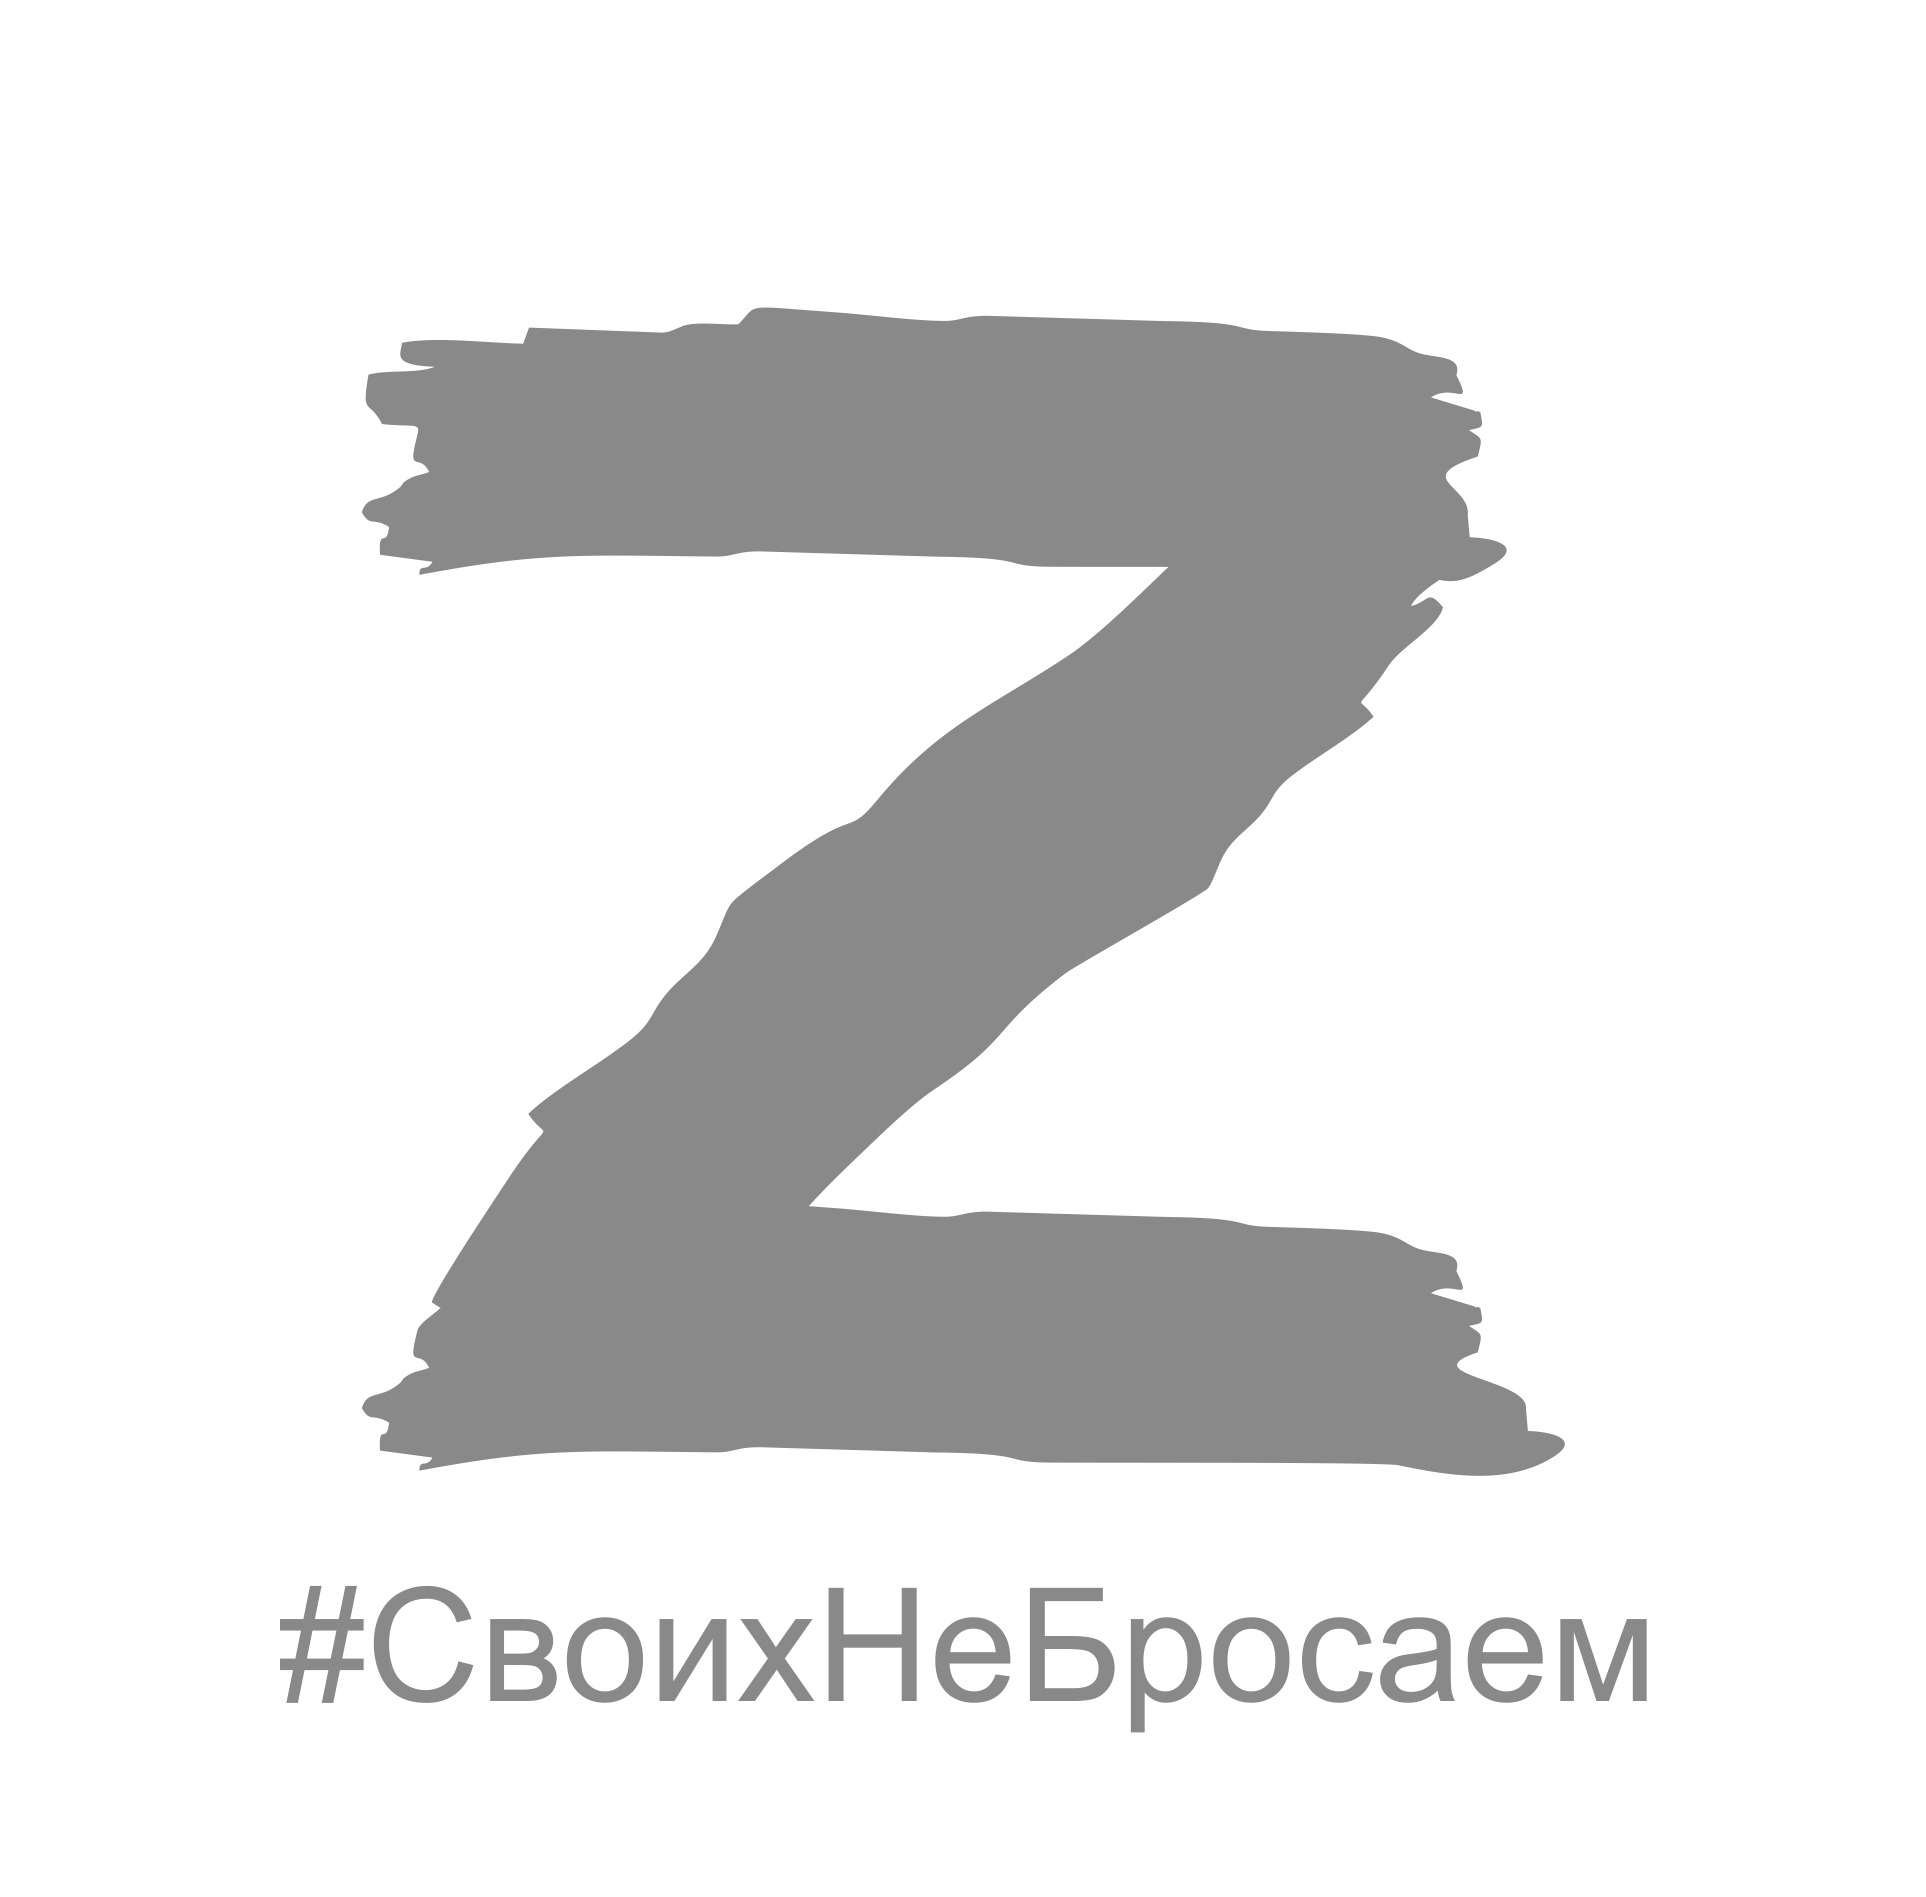 Za. Эмблема z. Символика с буквой z. Буква z на прозрачном фоне. Знак z наклейка.